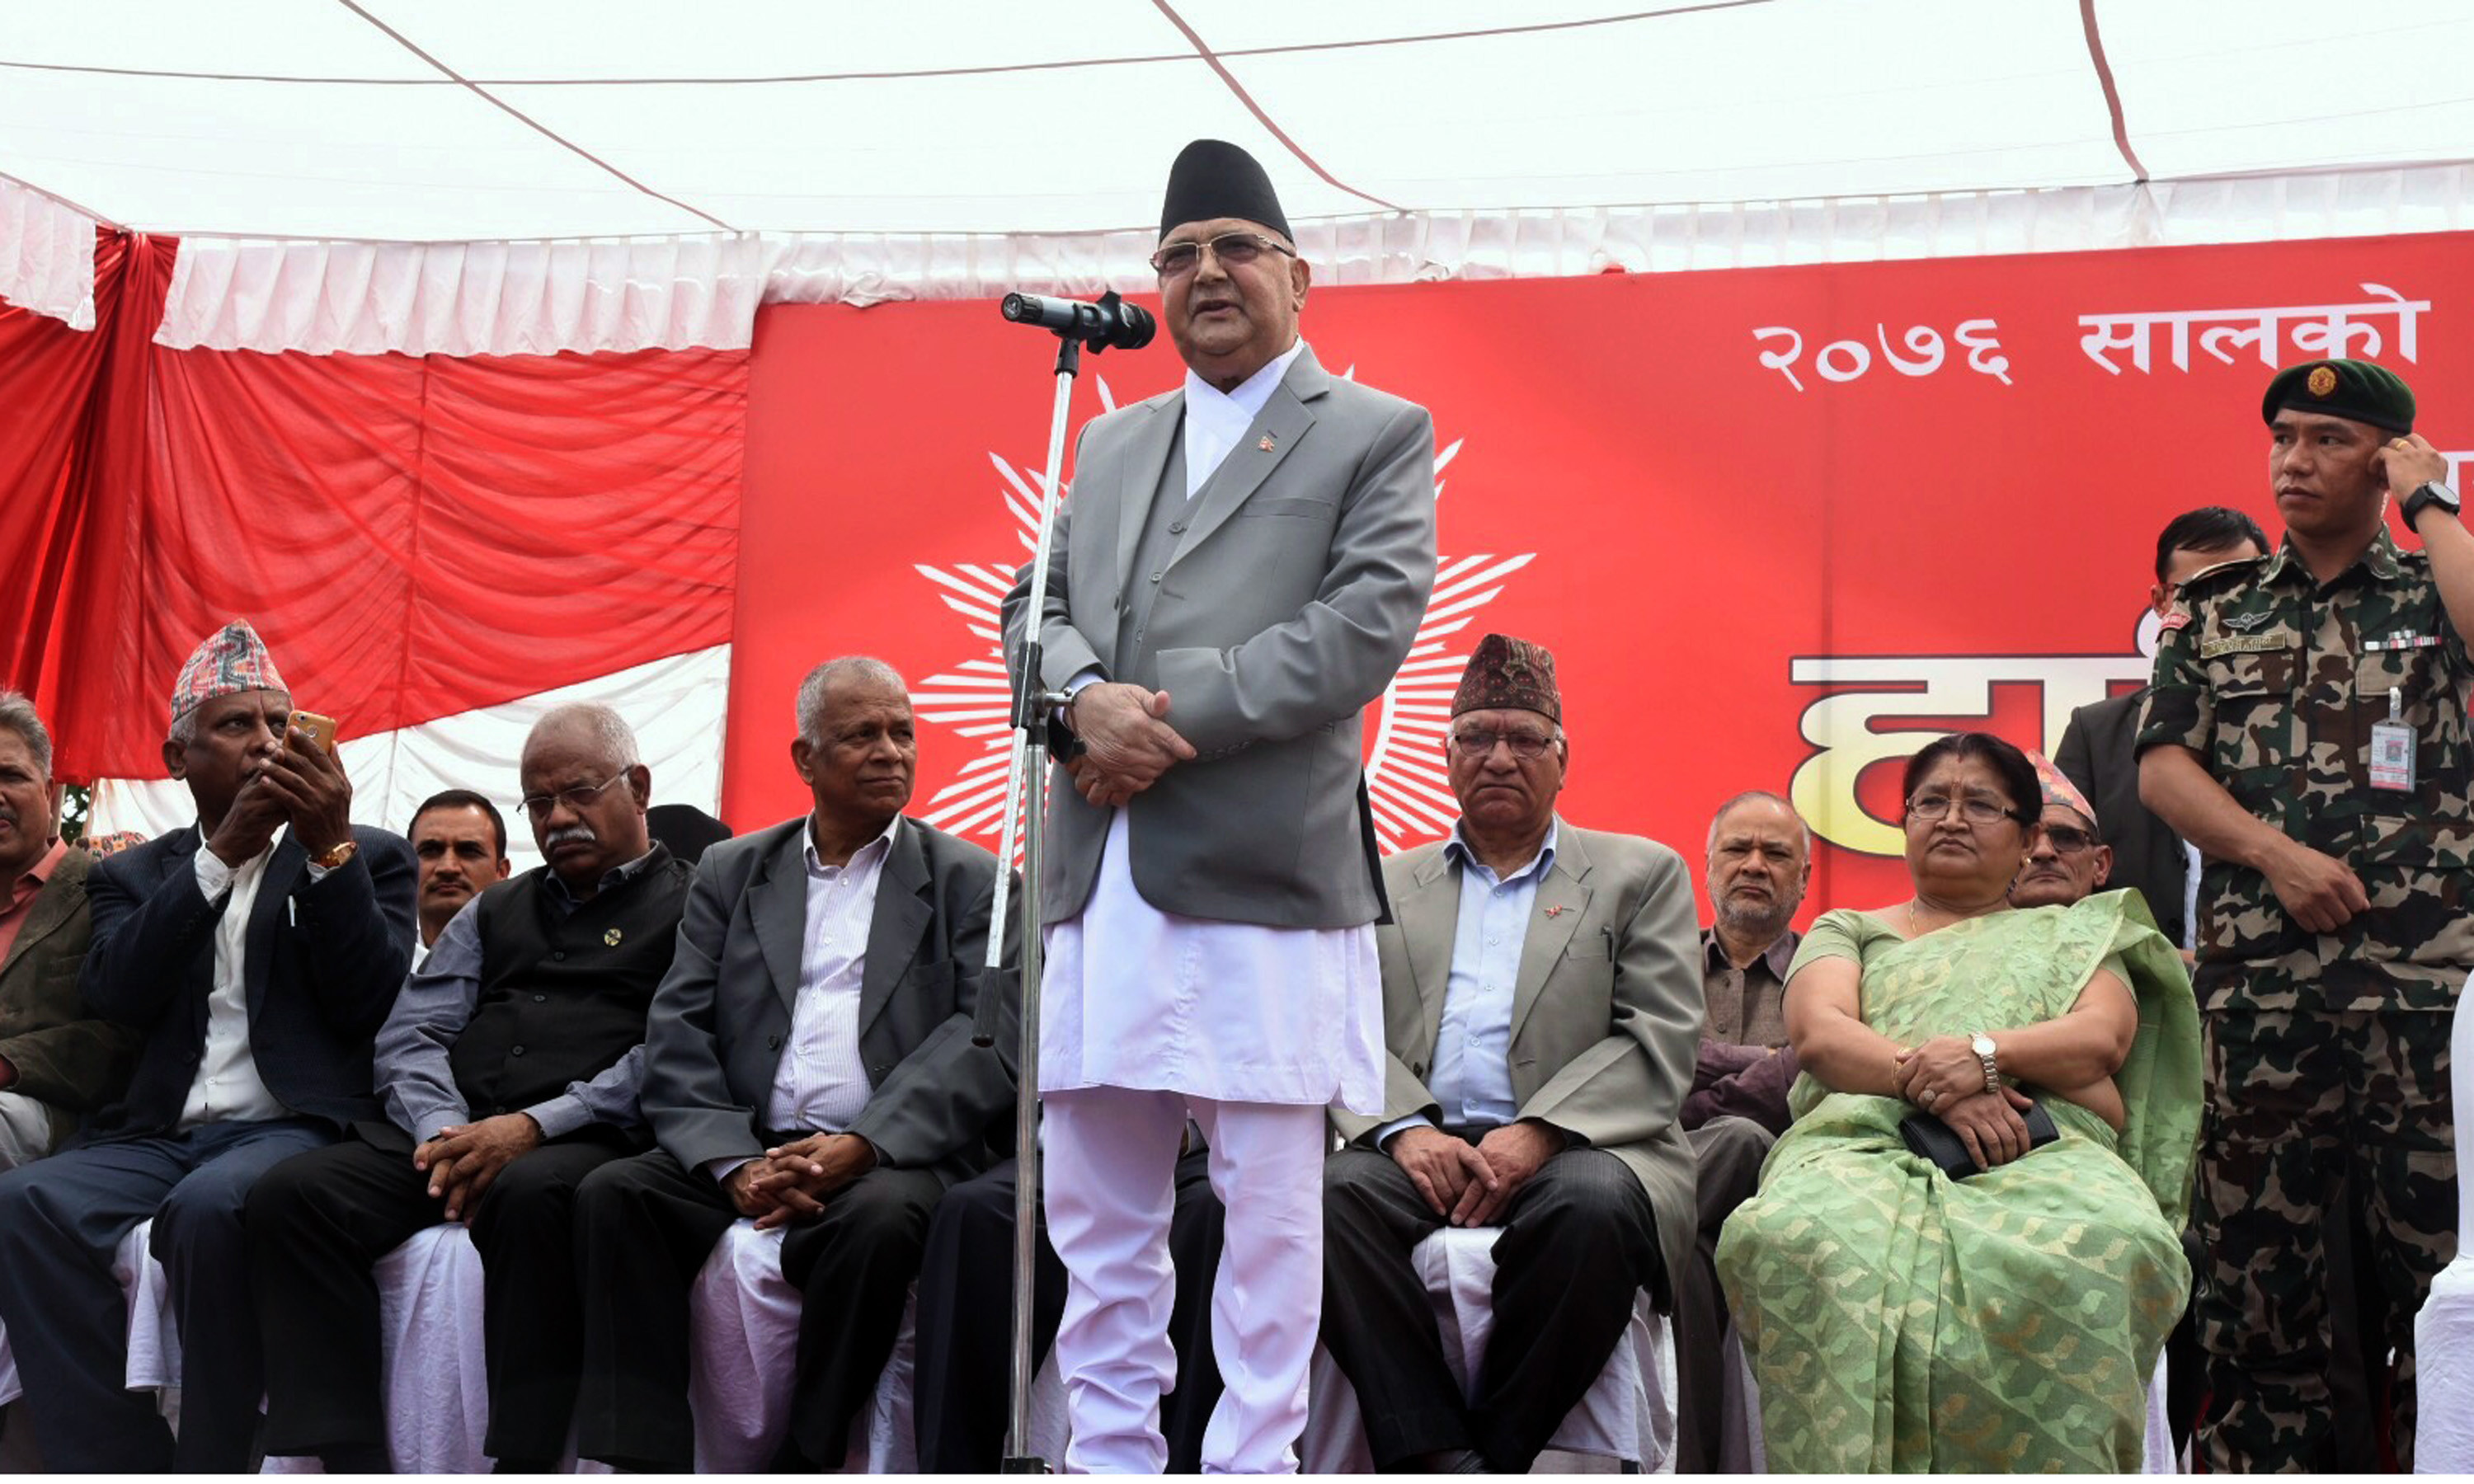 नेपाल विकास र समृद्धिको नयाँ बाटोमा अघि बढेको छ: प्रधानमन्त्री